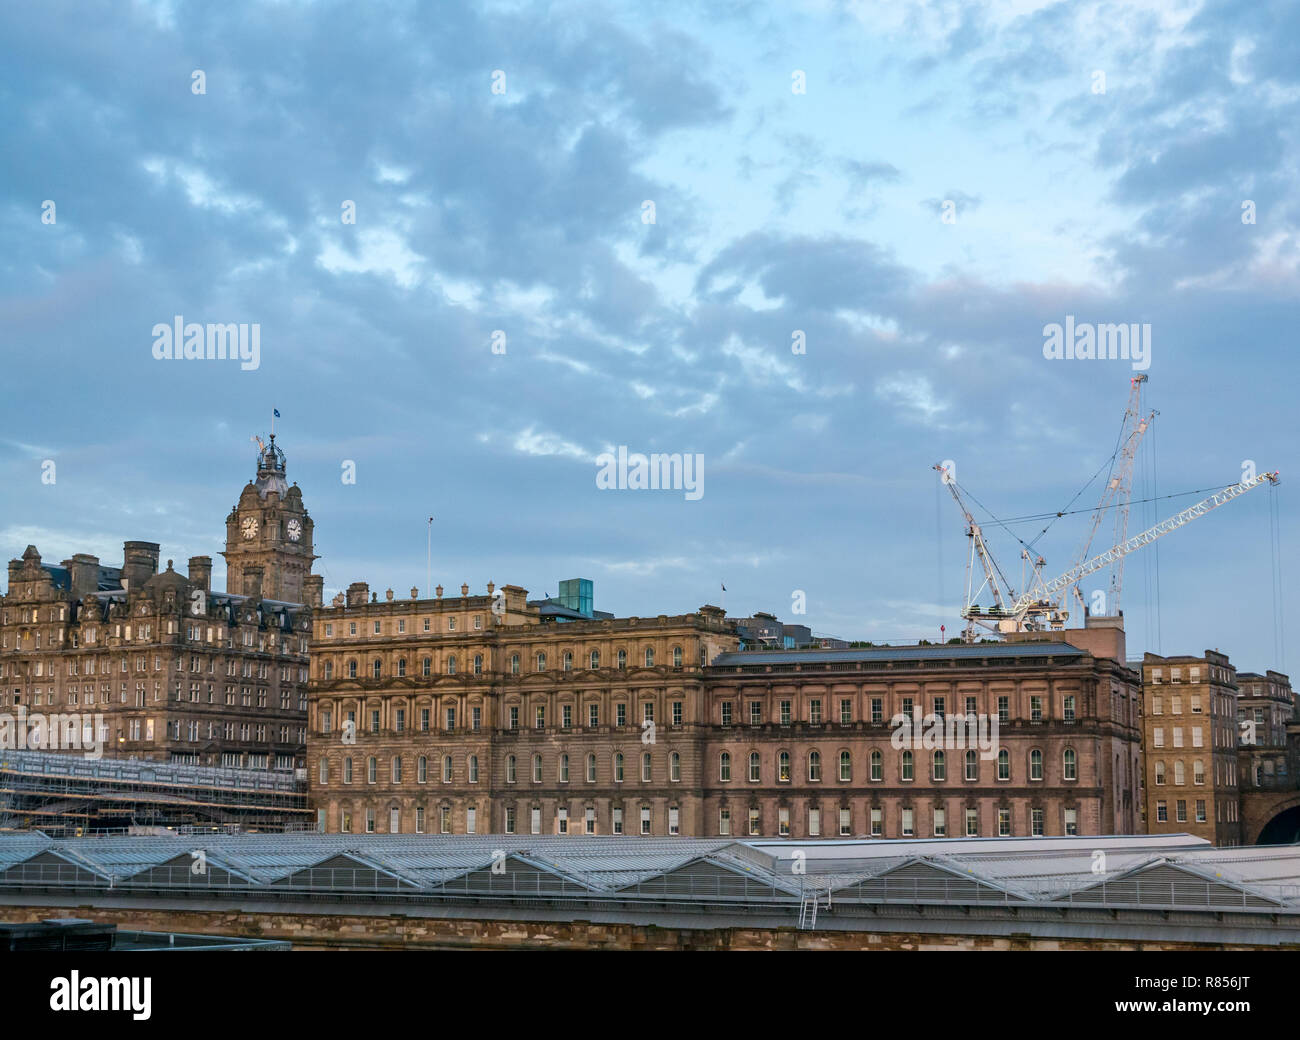 Edinburgh grand edifici in Alba d'inverno. Rocco Forte Balmoral Hotel con la torre dell orologio e la stazione di Waverley tetto di vetro, Scotland, Regno Unito Foto Stock